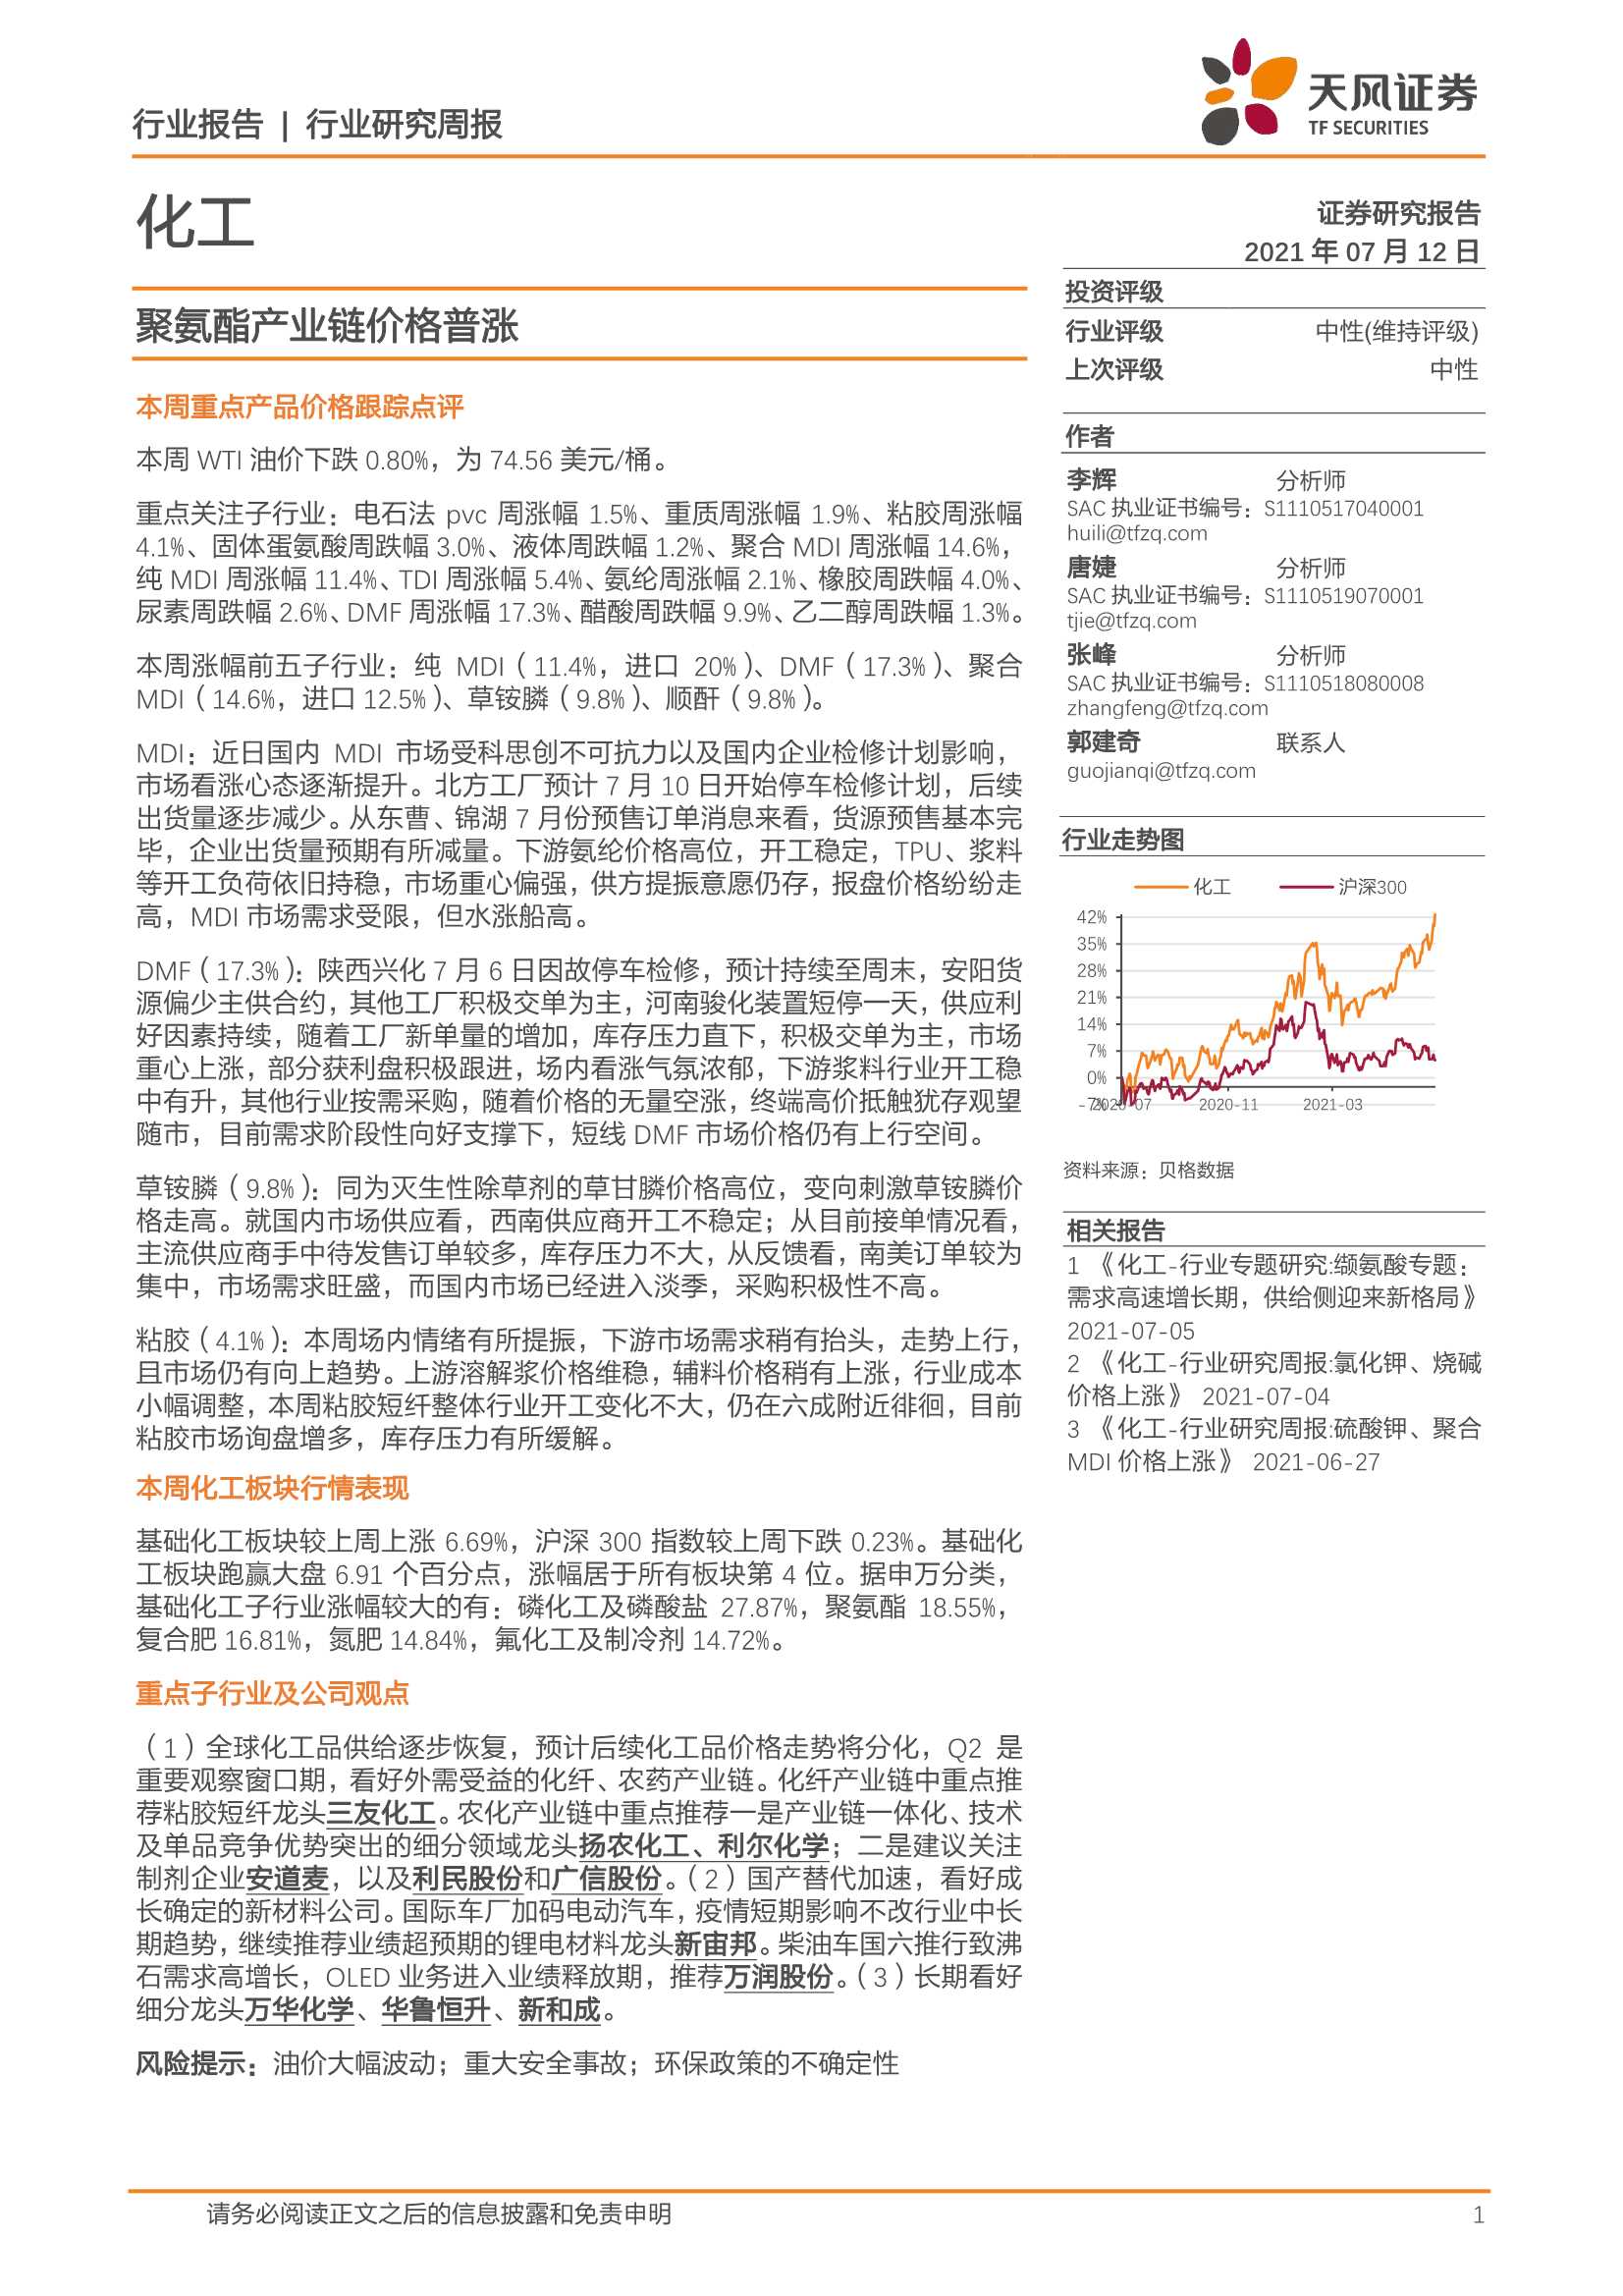 天风证券-化工行业研究周报：聚氨酯产业链价格普涨-20210712-21页